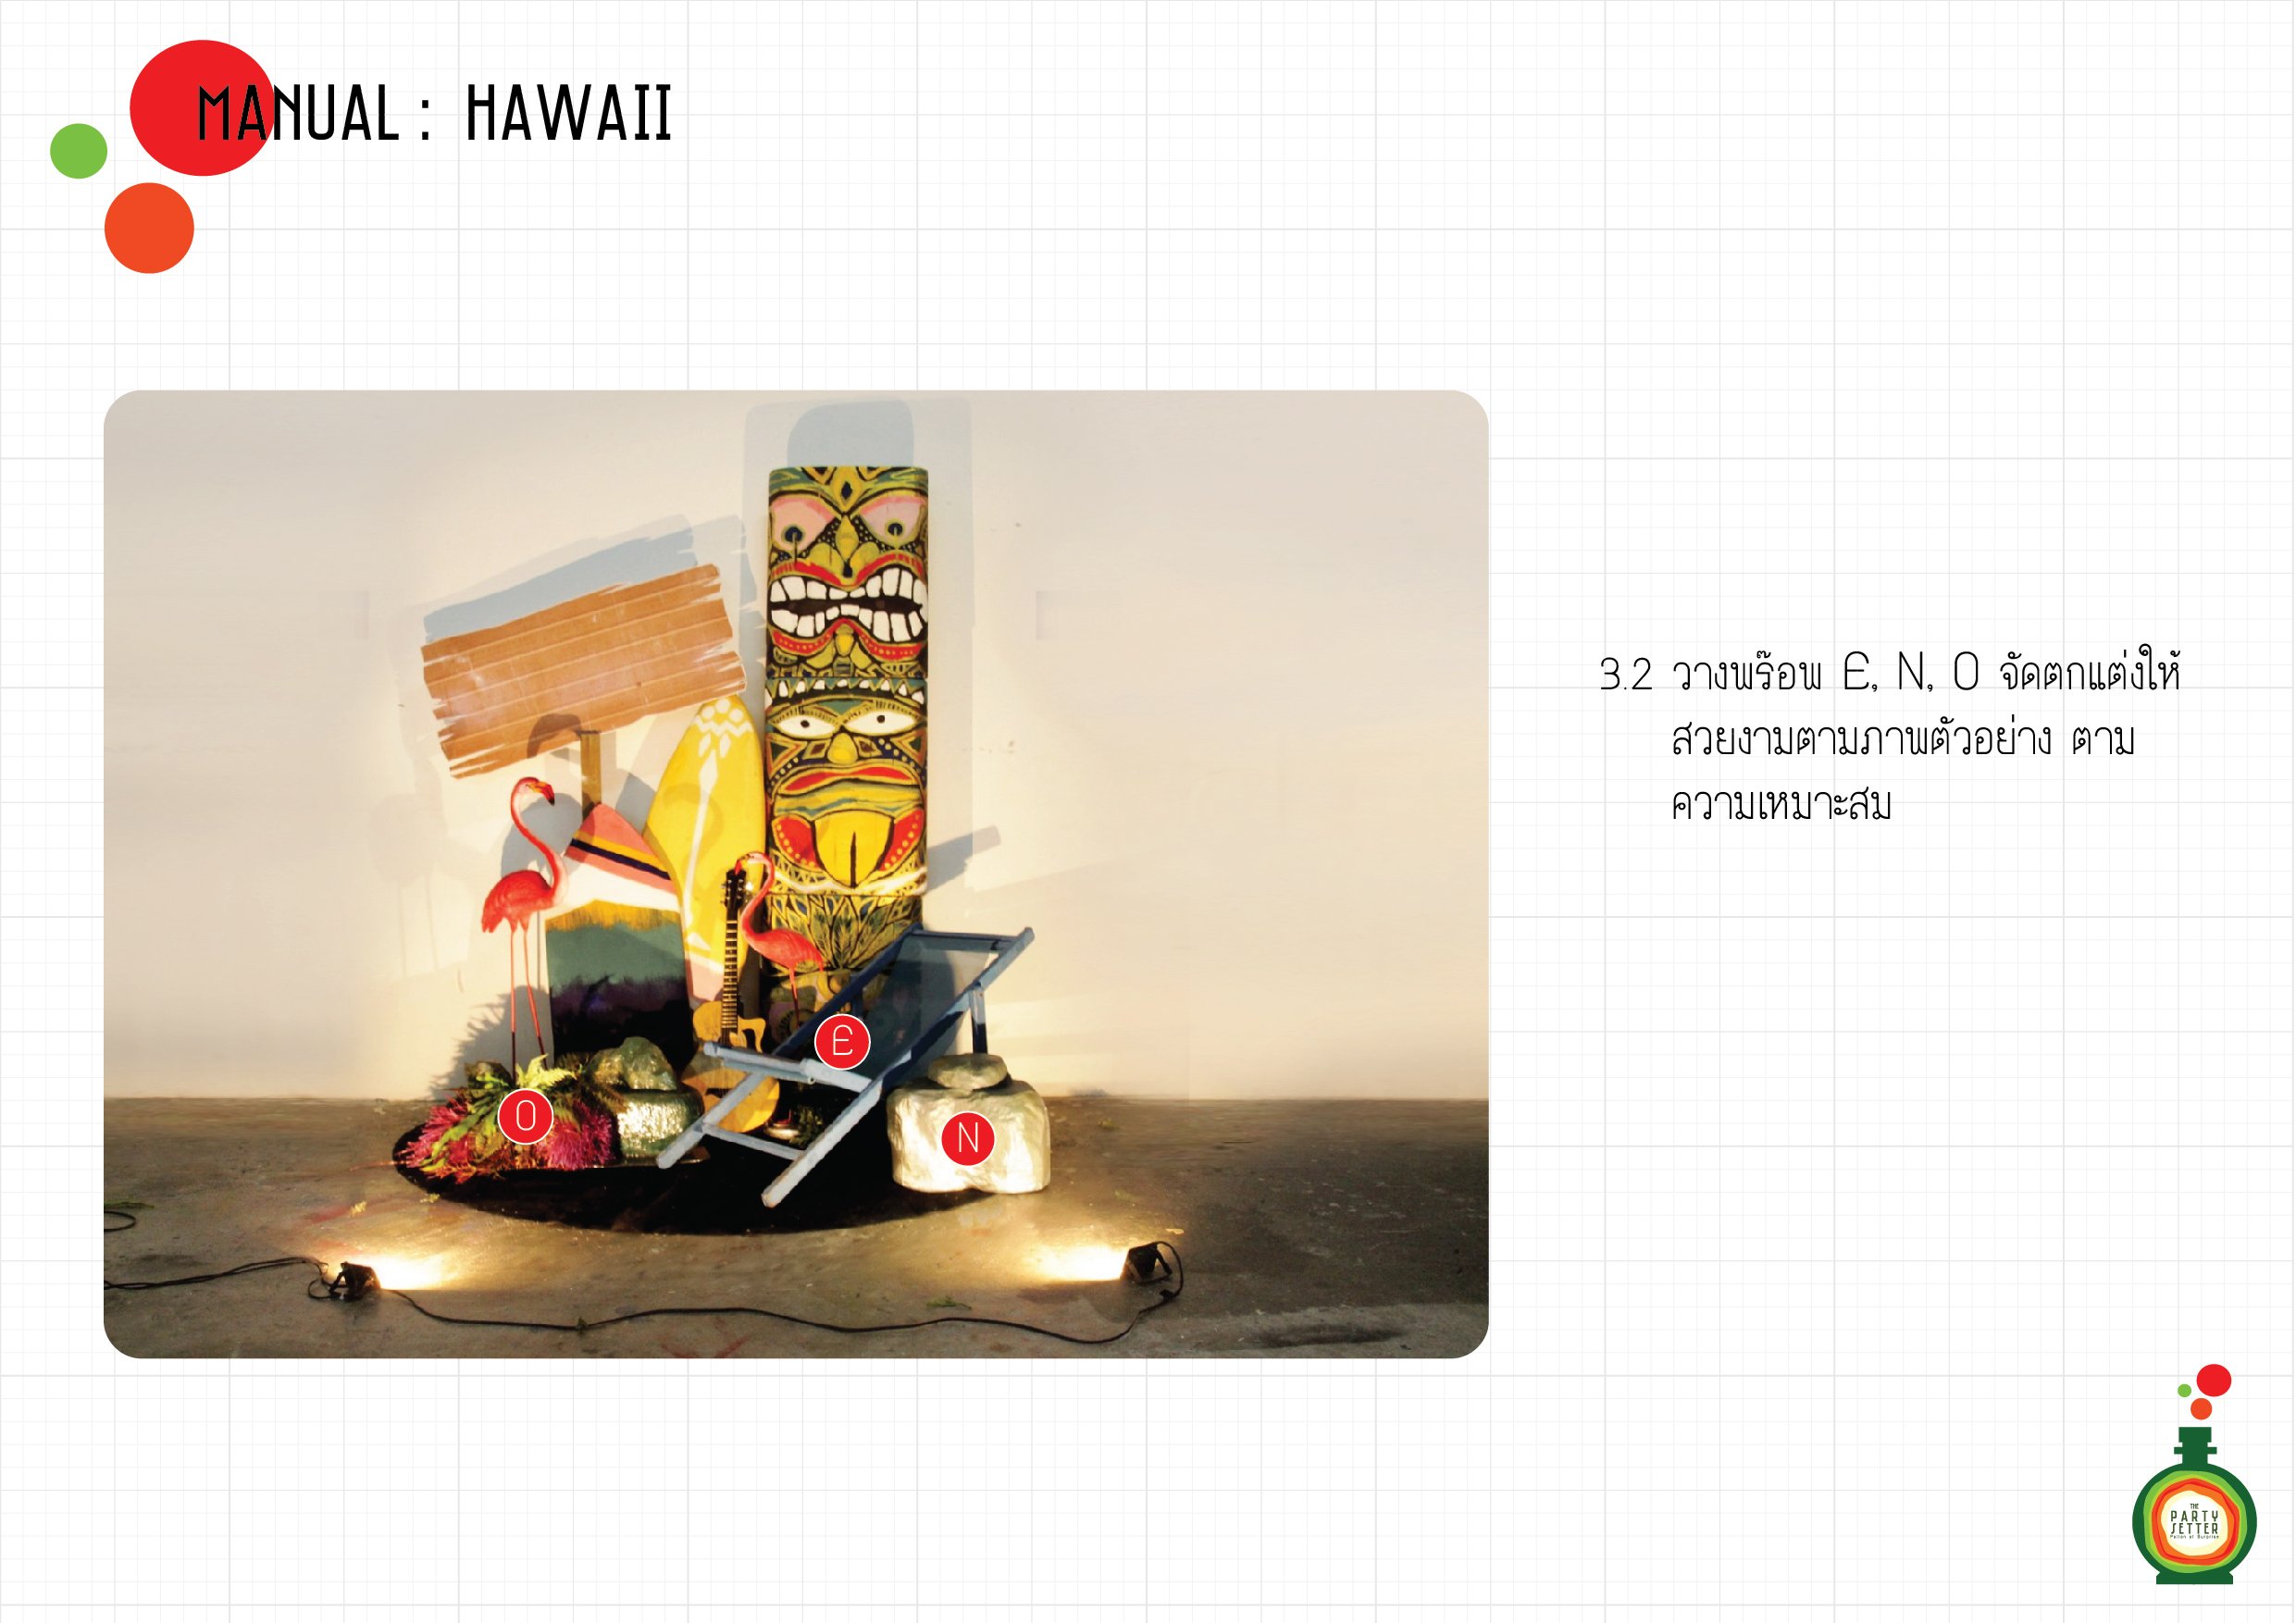 Manual_Hawaii-4-03.2-01.jpg